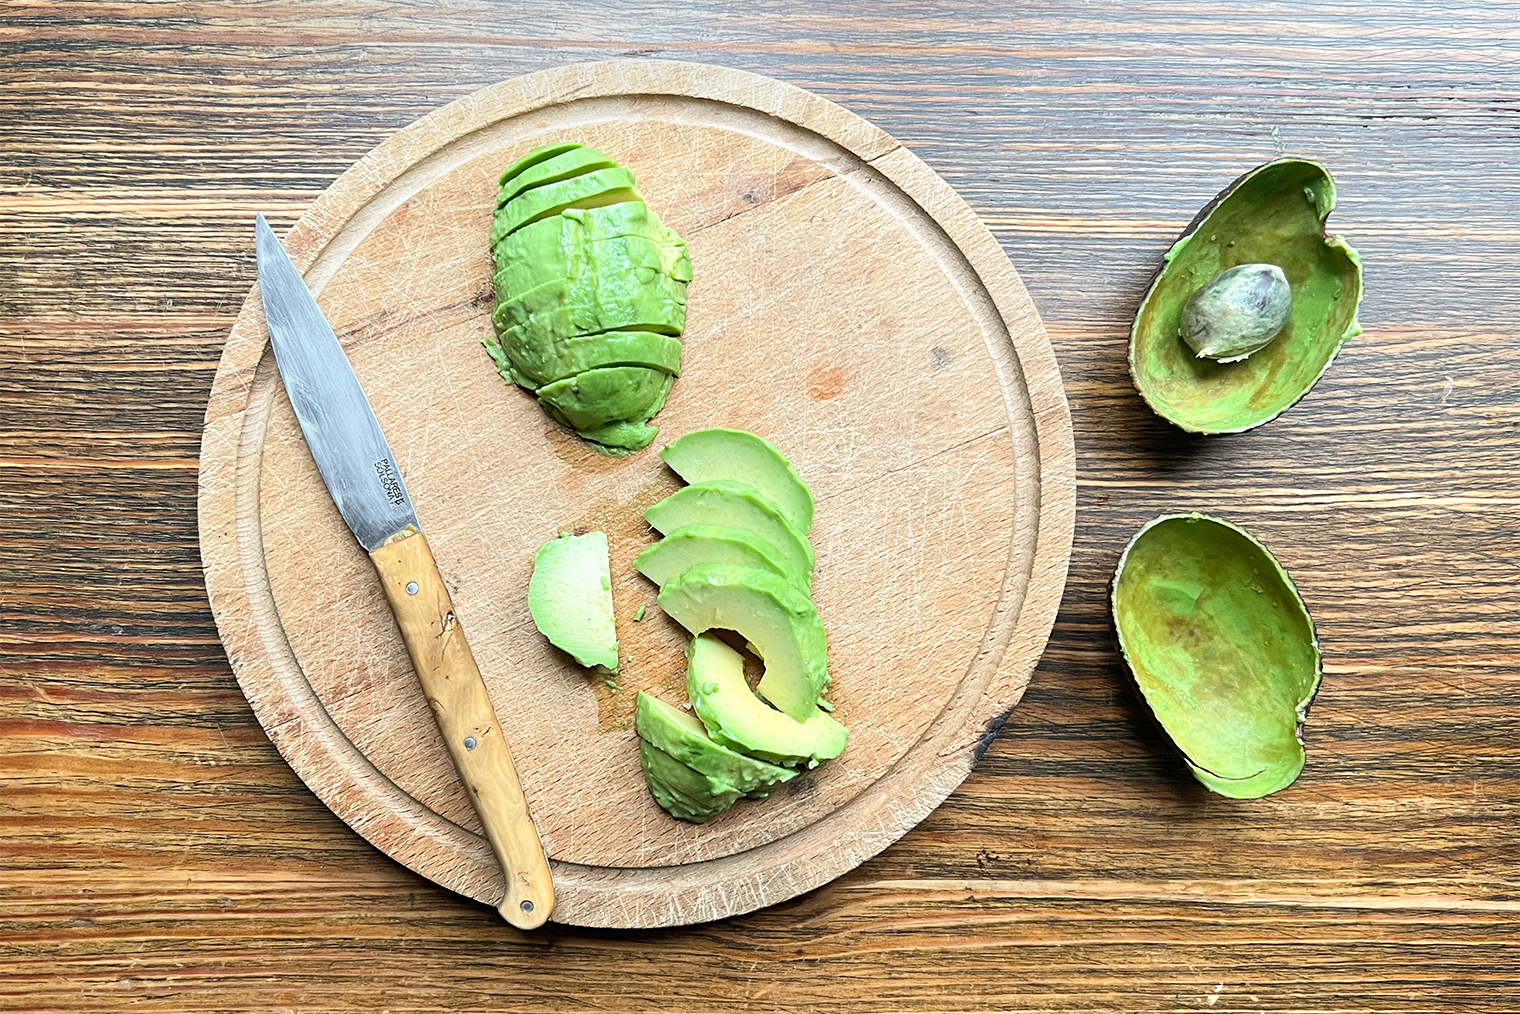 Чтобы легко удалить косточку из авокадо, воткните в нее лезвие ножа и прокрутите по или против часовой стрелки